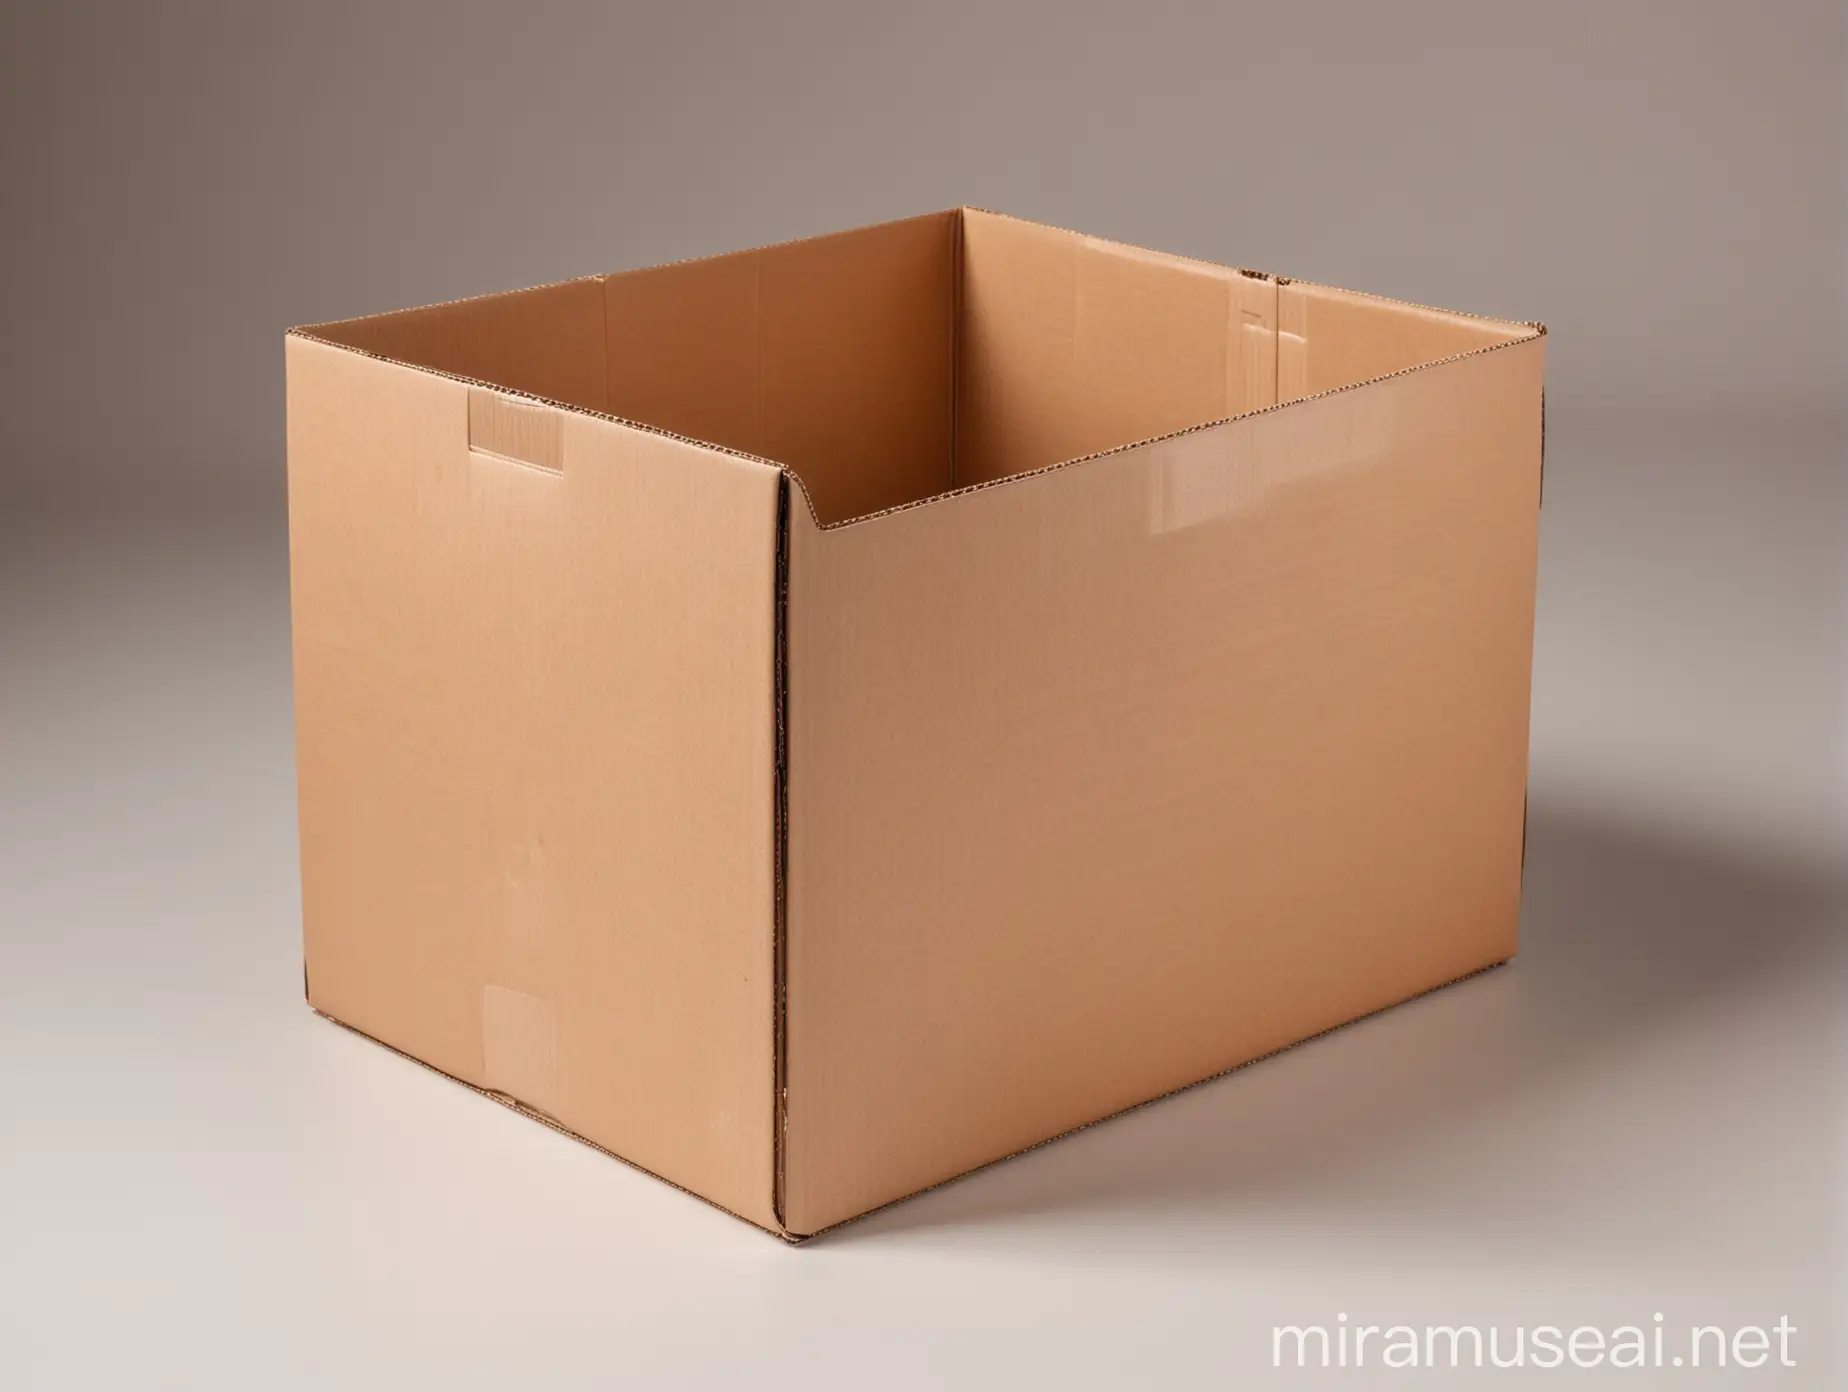 пустая коробка из гофрокартона, белый фон, фото